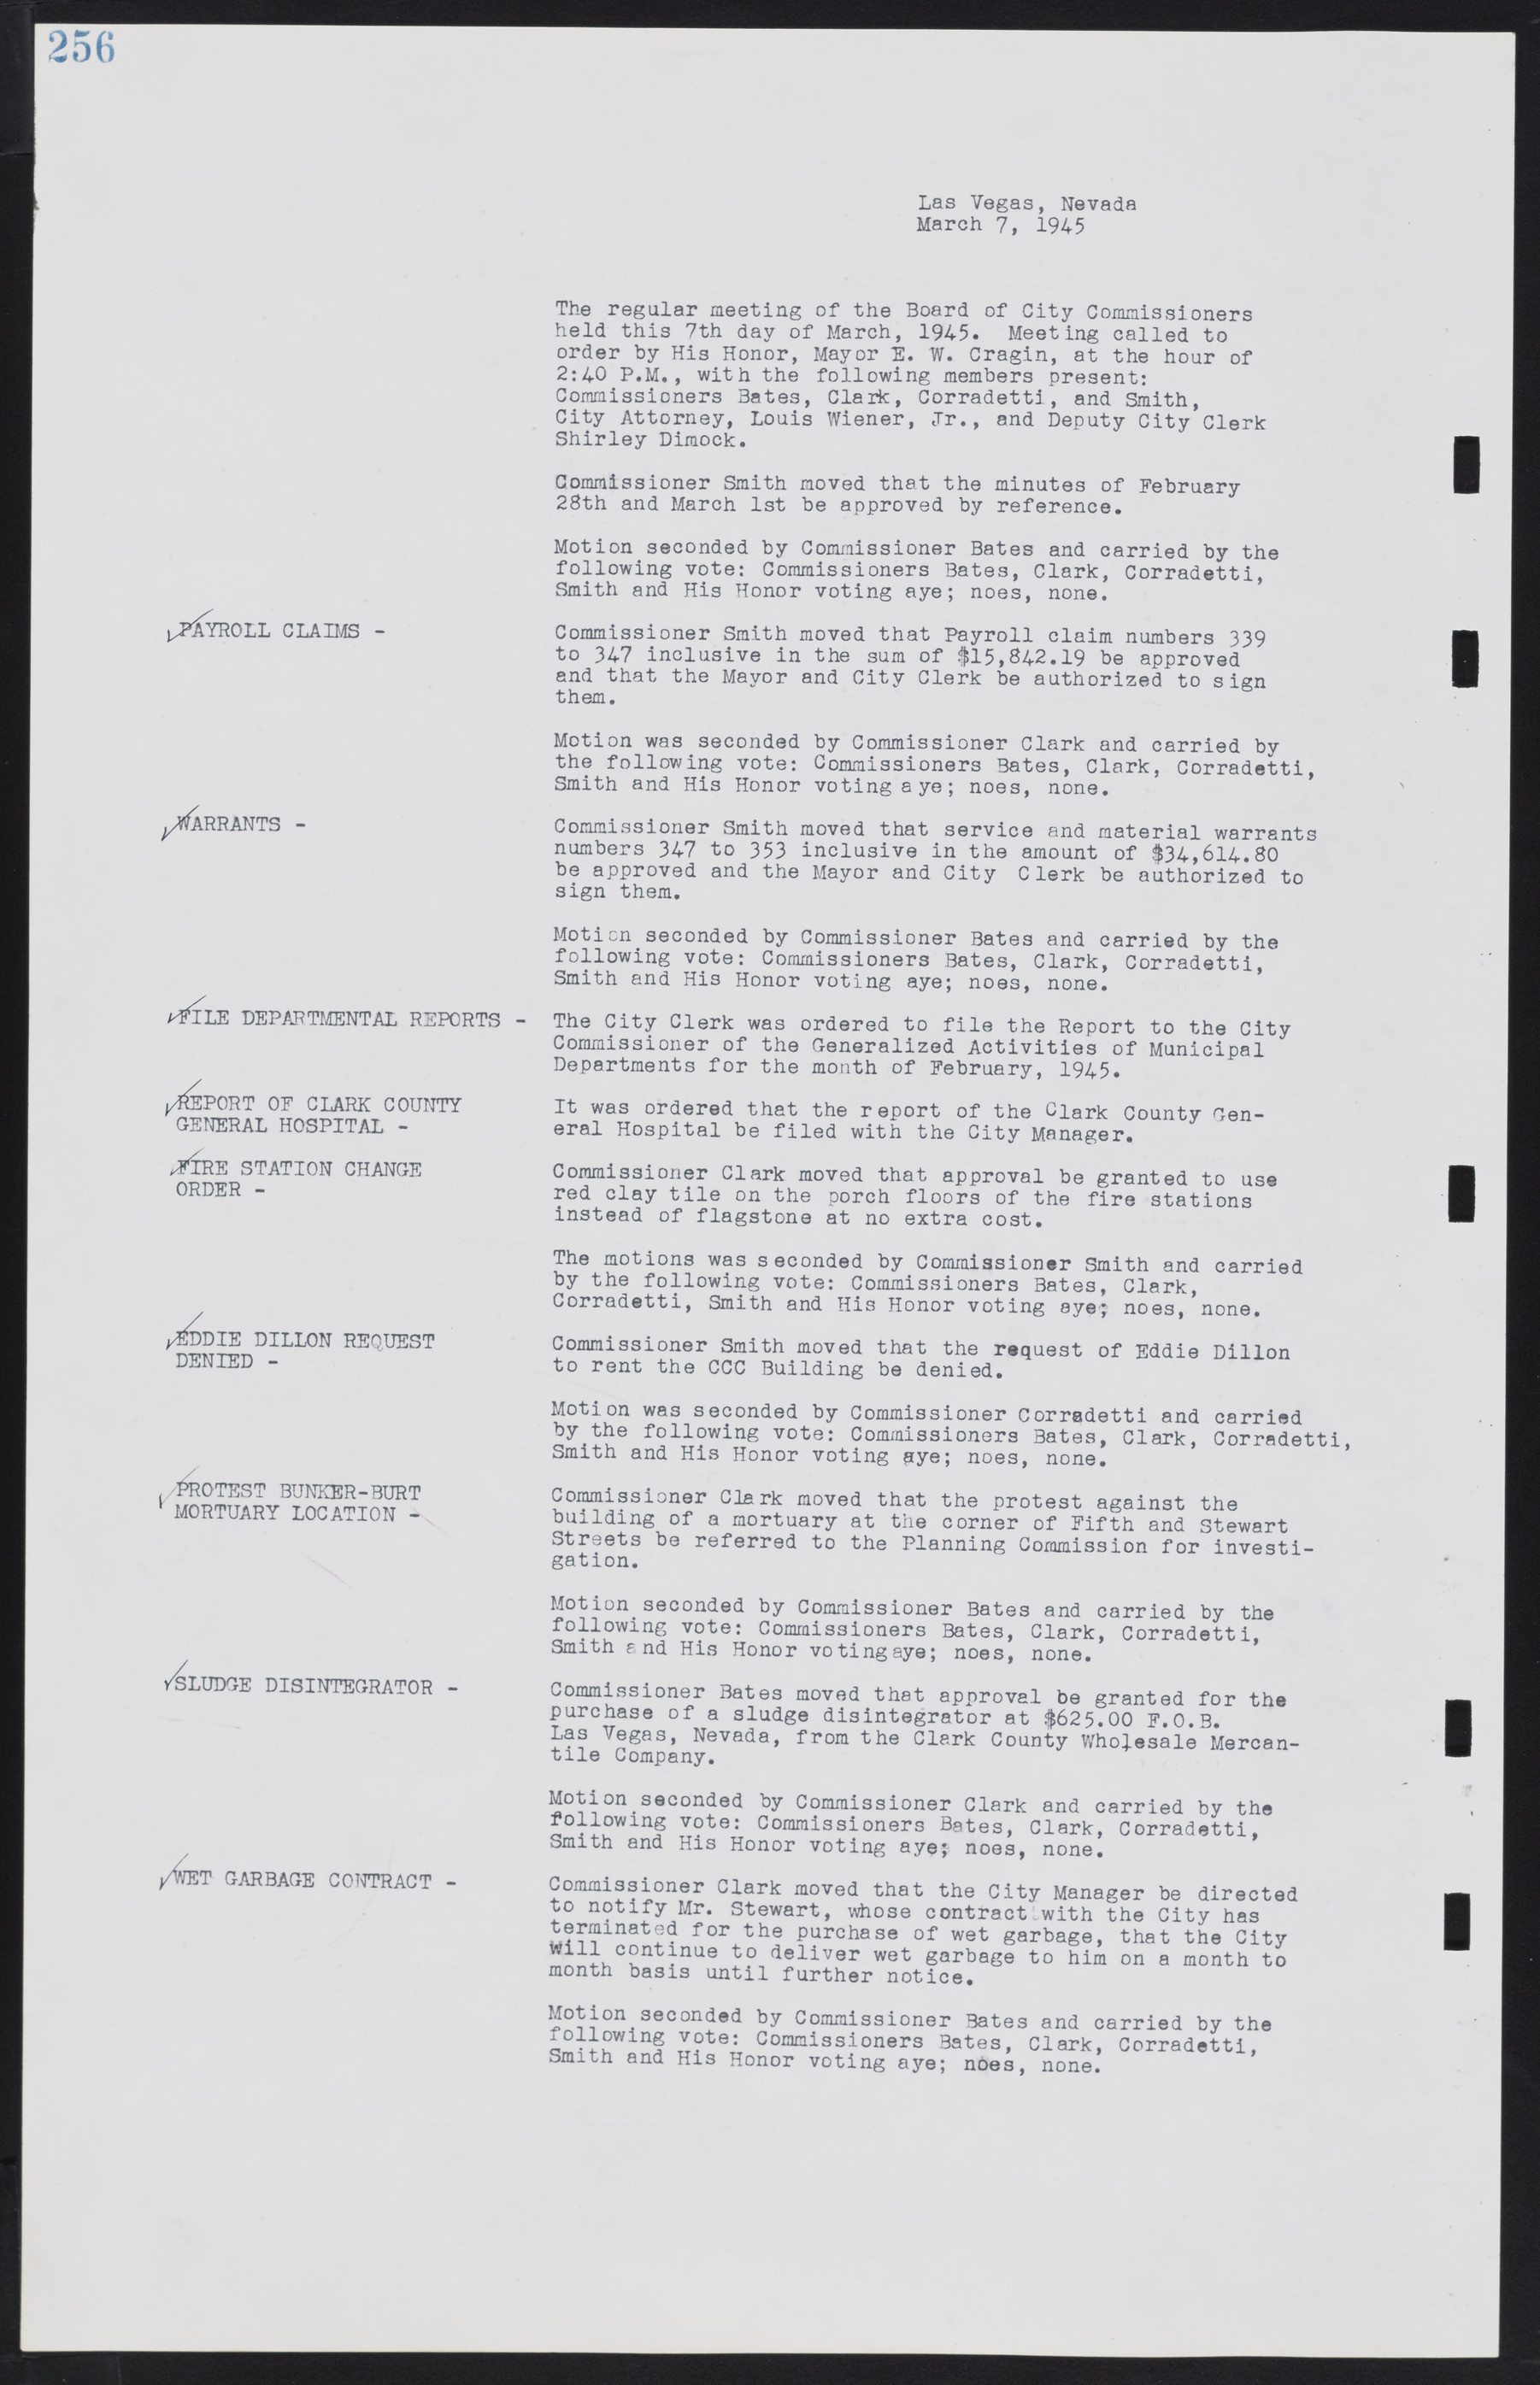 Las Vegas City Commission Minutes, August 11, 1942 to December 30, 1946, lvc000005-278